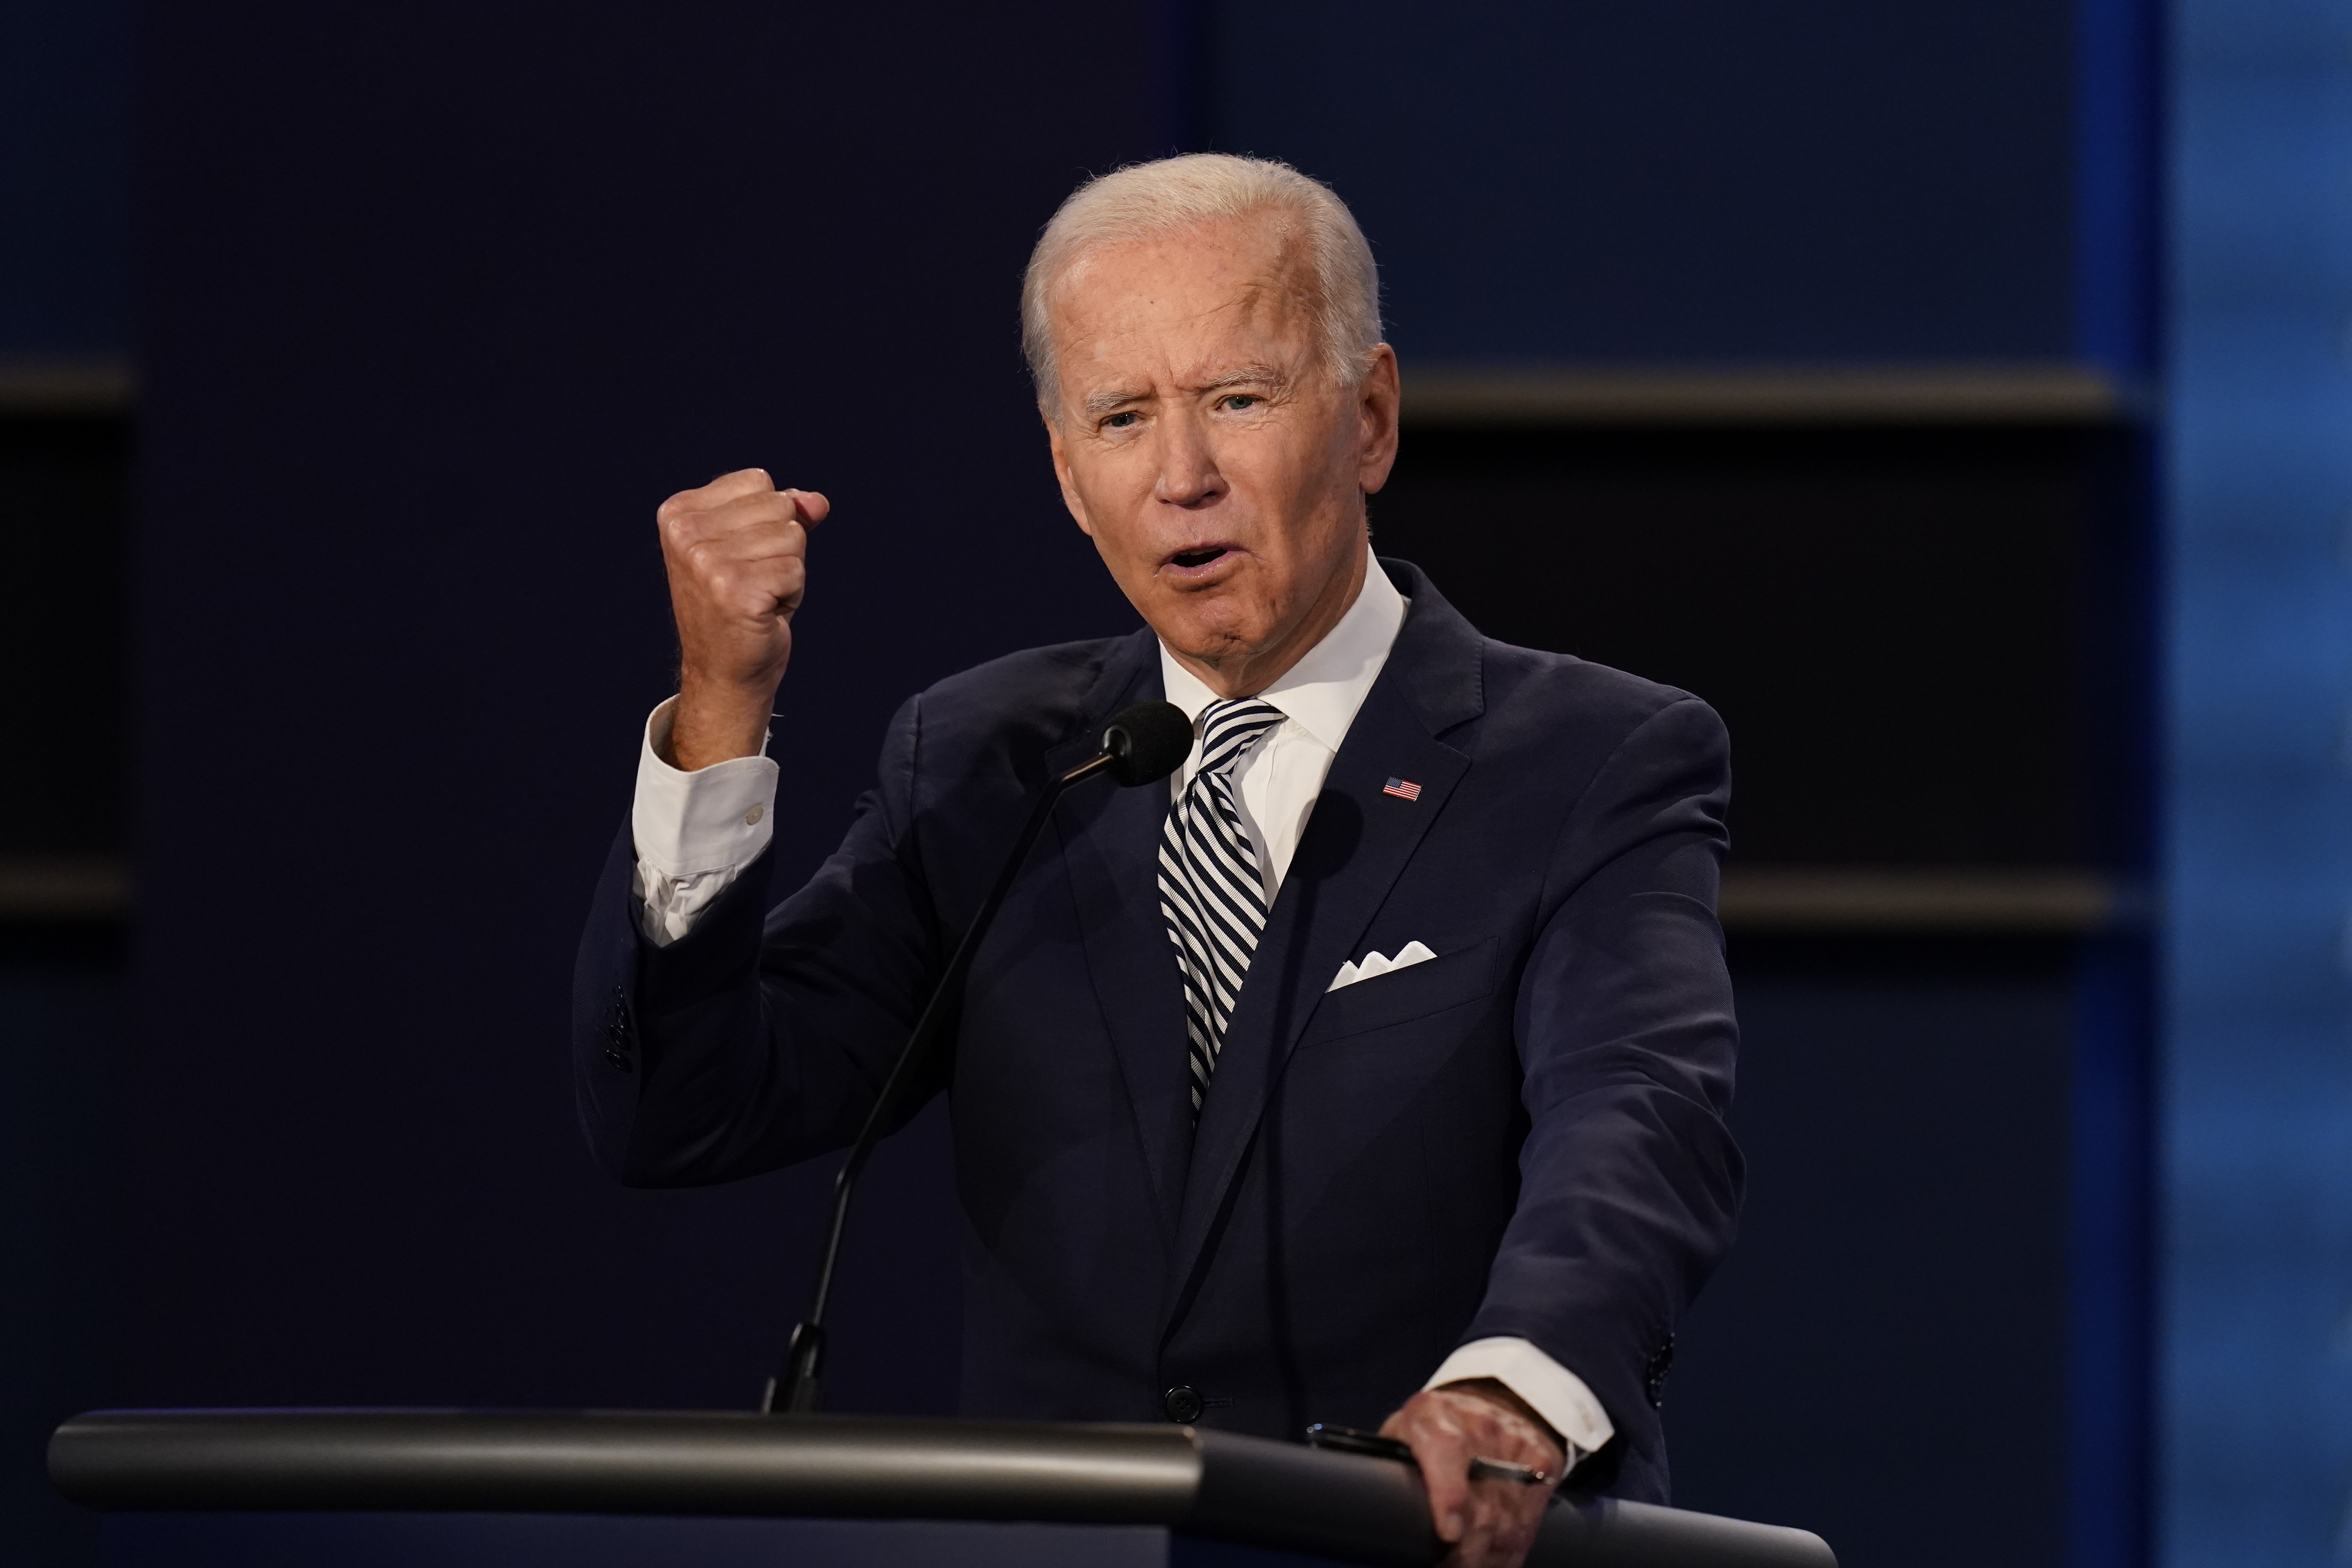 Joe Biden a aprobat ajutorul pentru Ucraina în valoare de 40 de miliarde de dolari